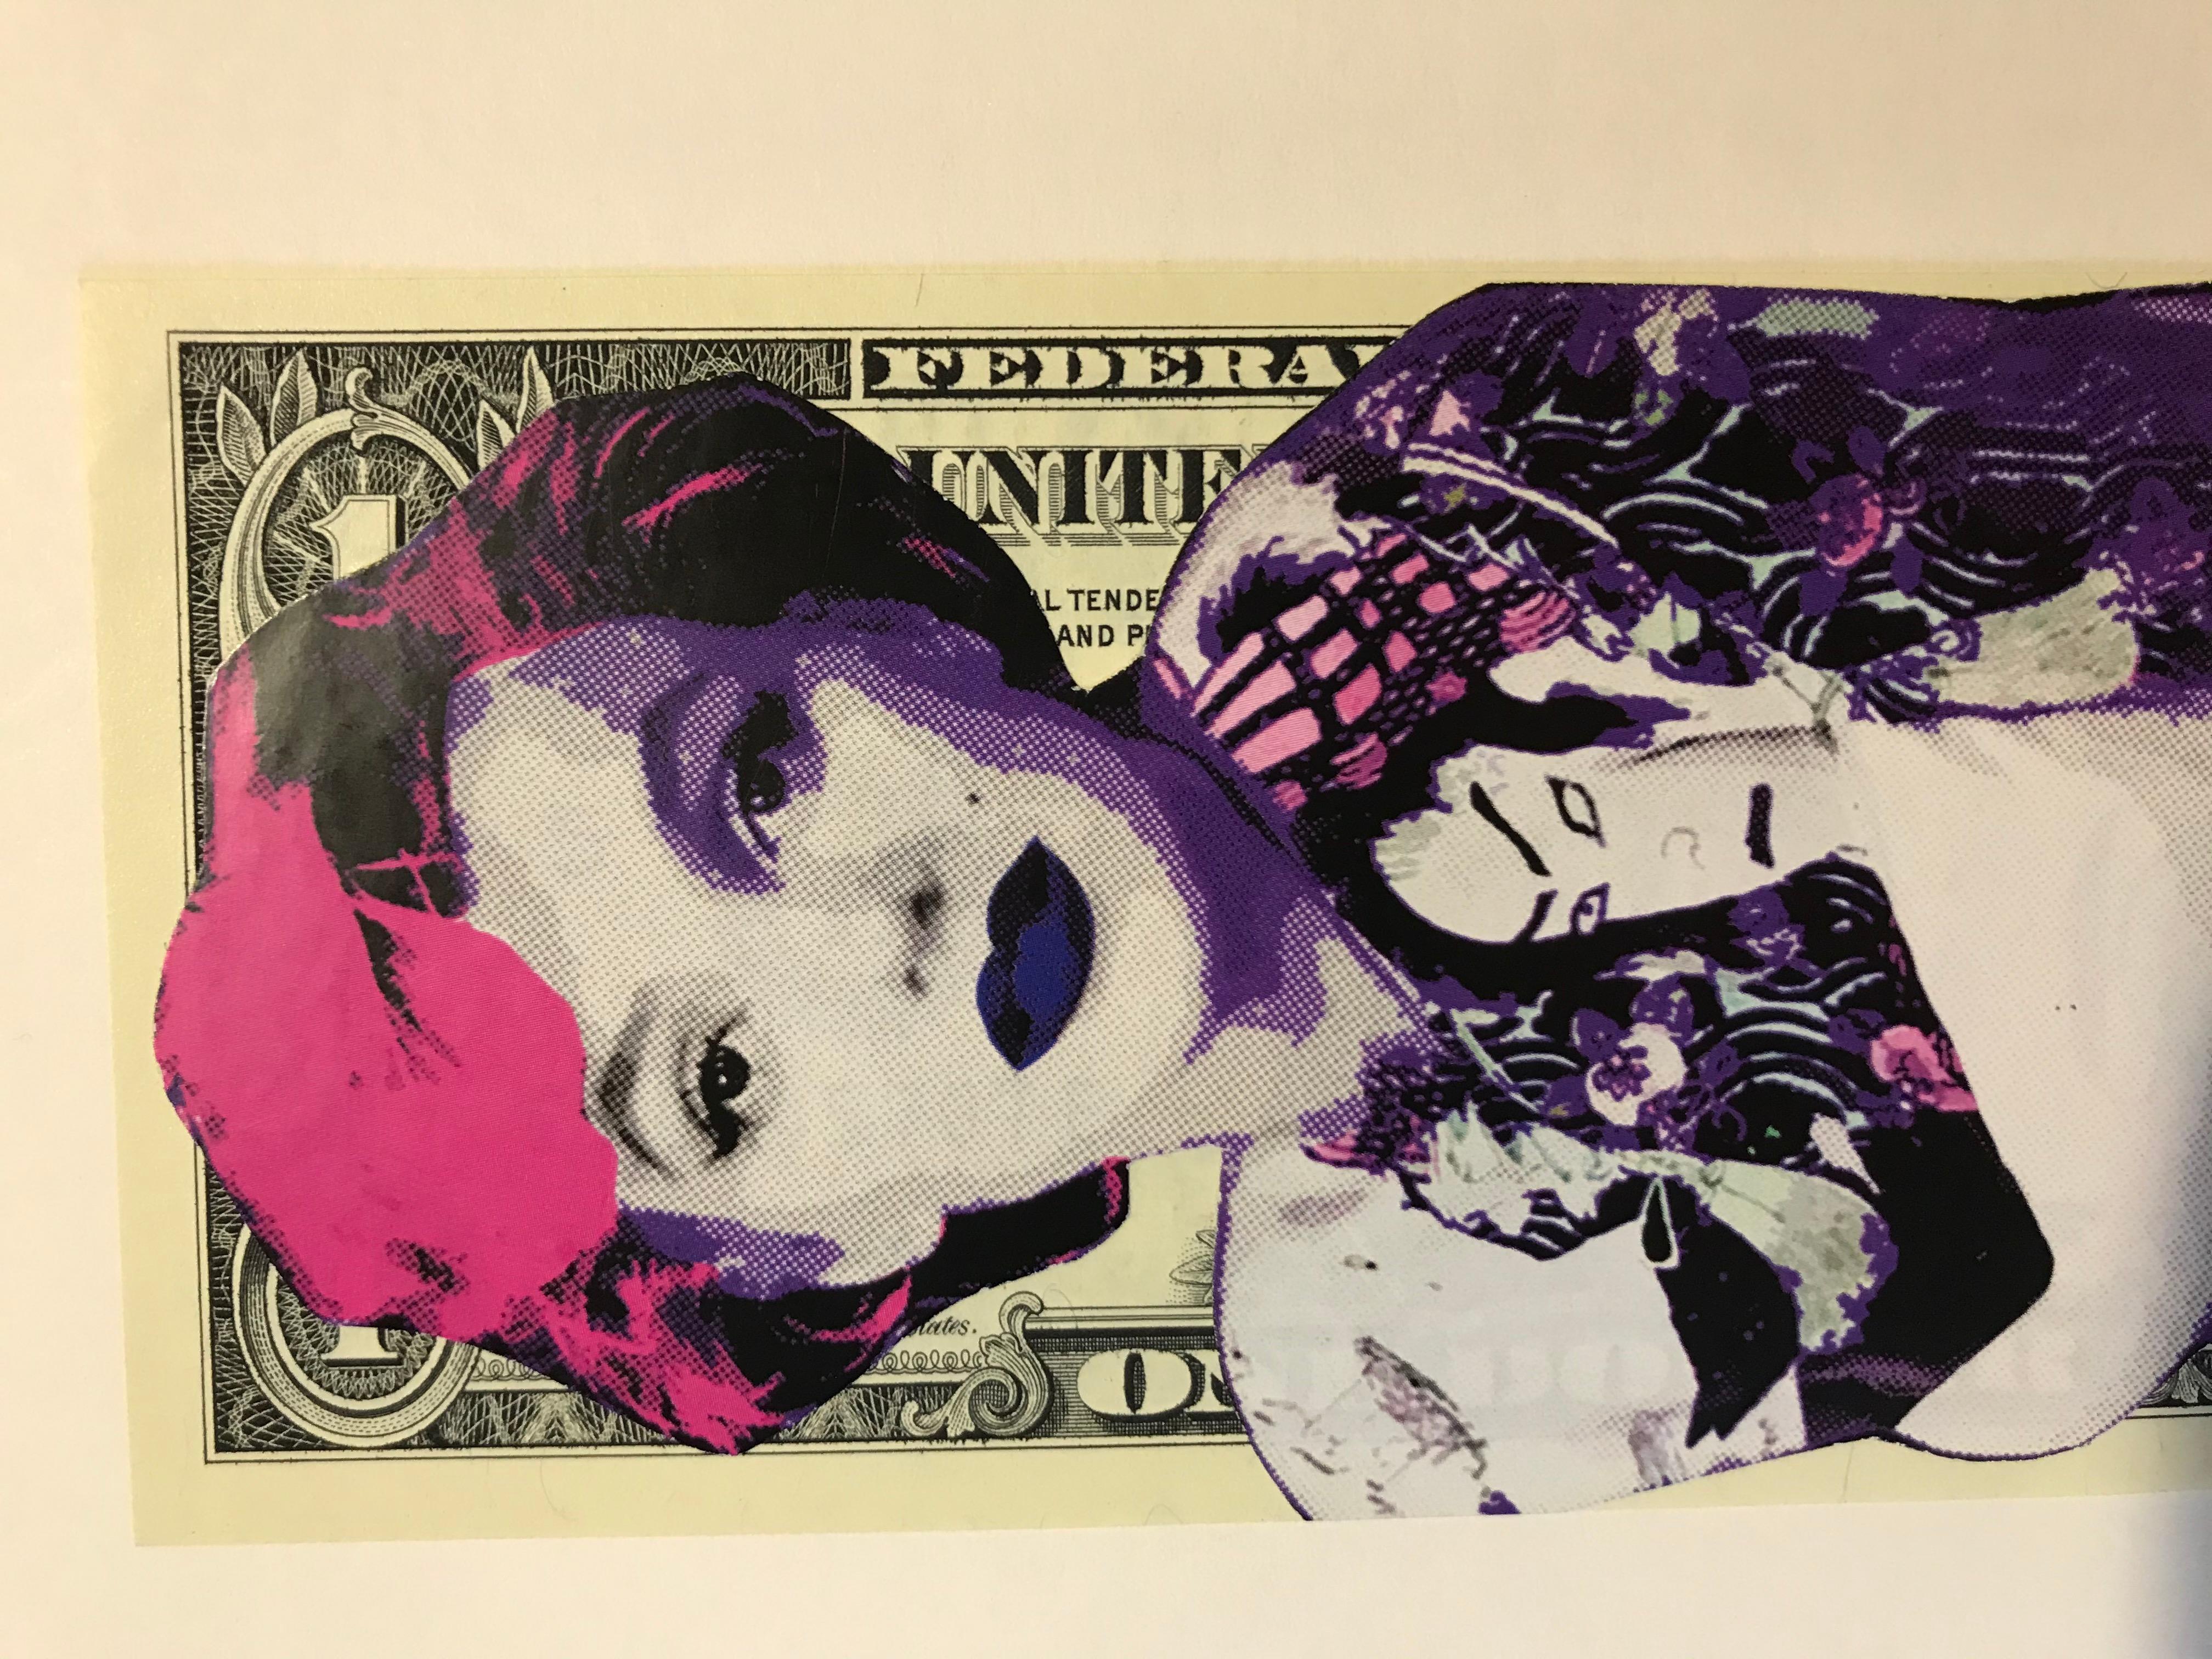 Death NYC
Yakusa marilyn  
Techniques mixtes sur billet de 1 dollar
2017
Exemplaire unique 
2 certificats 
Signé et daté 
15,5 x 6,7 cms
99 euros